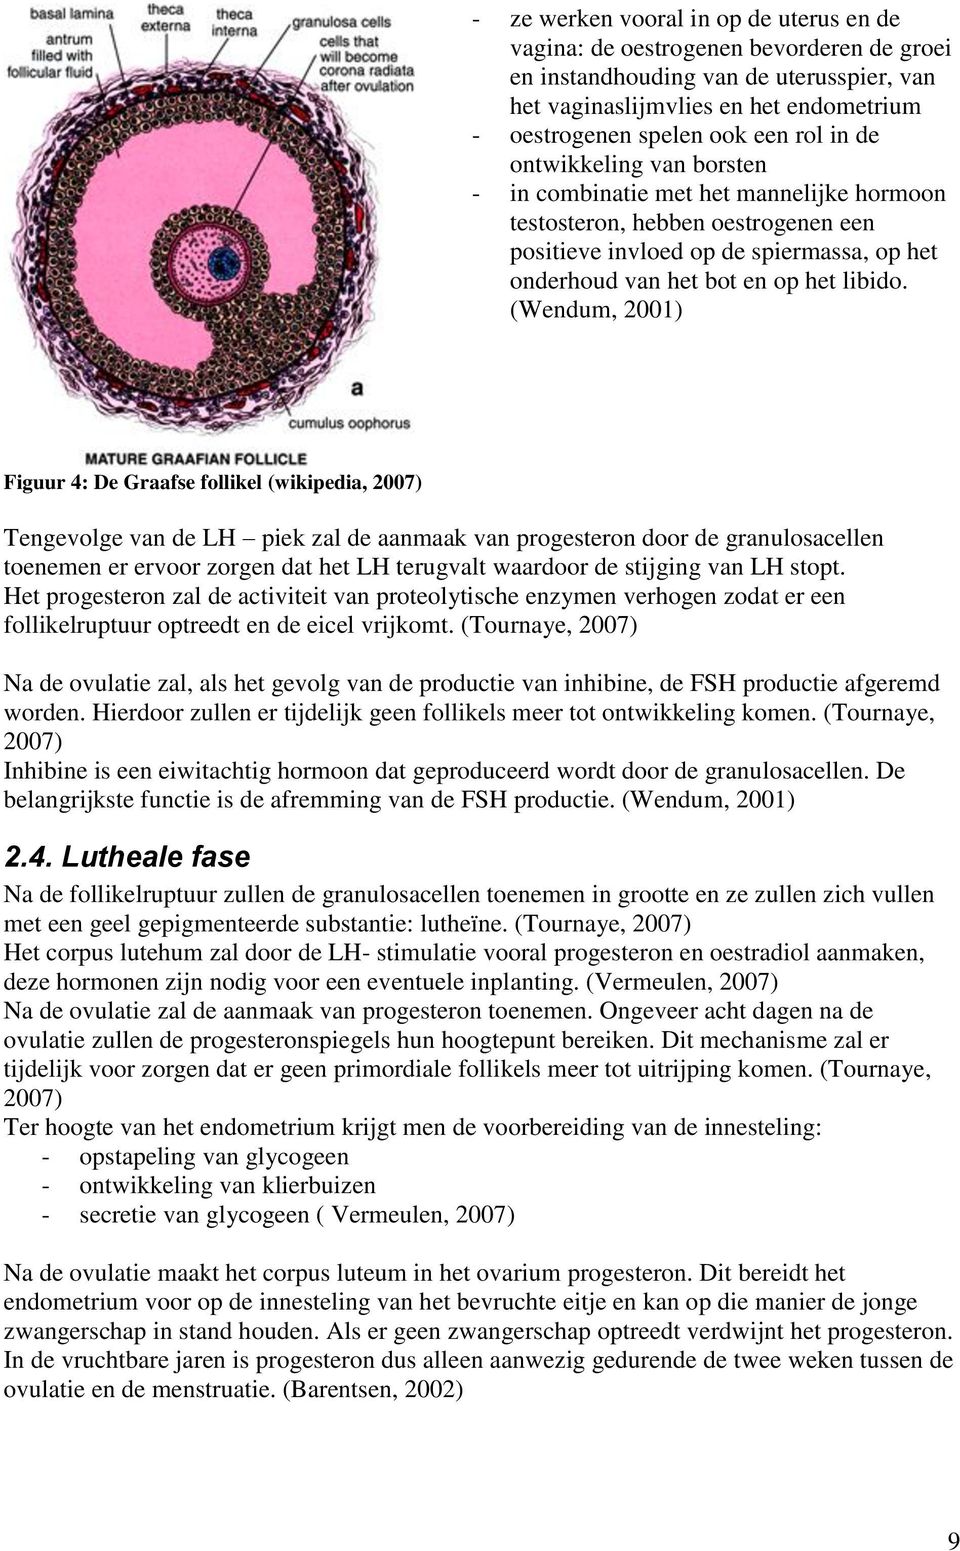 (Wendum, 2001) Figuur 4: De Graafse follikel (wikipedia, 2007) Tengevolge van de LH piek zal de aanmaak van progesteron door de granulosacellen toenemen er ervoor zorgen dat het LH terugvalt waardoor